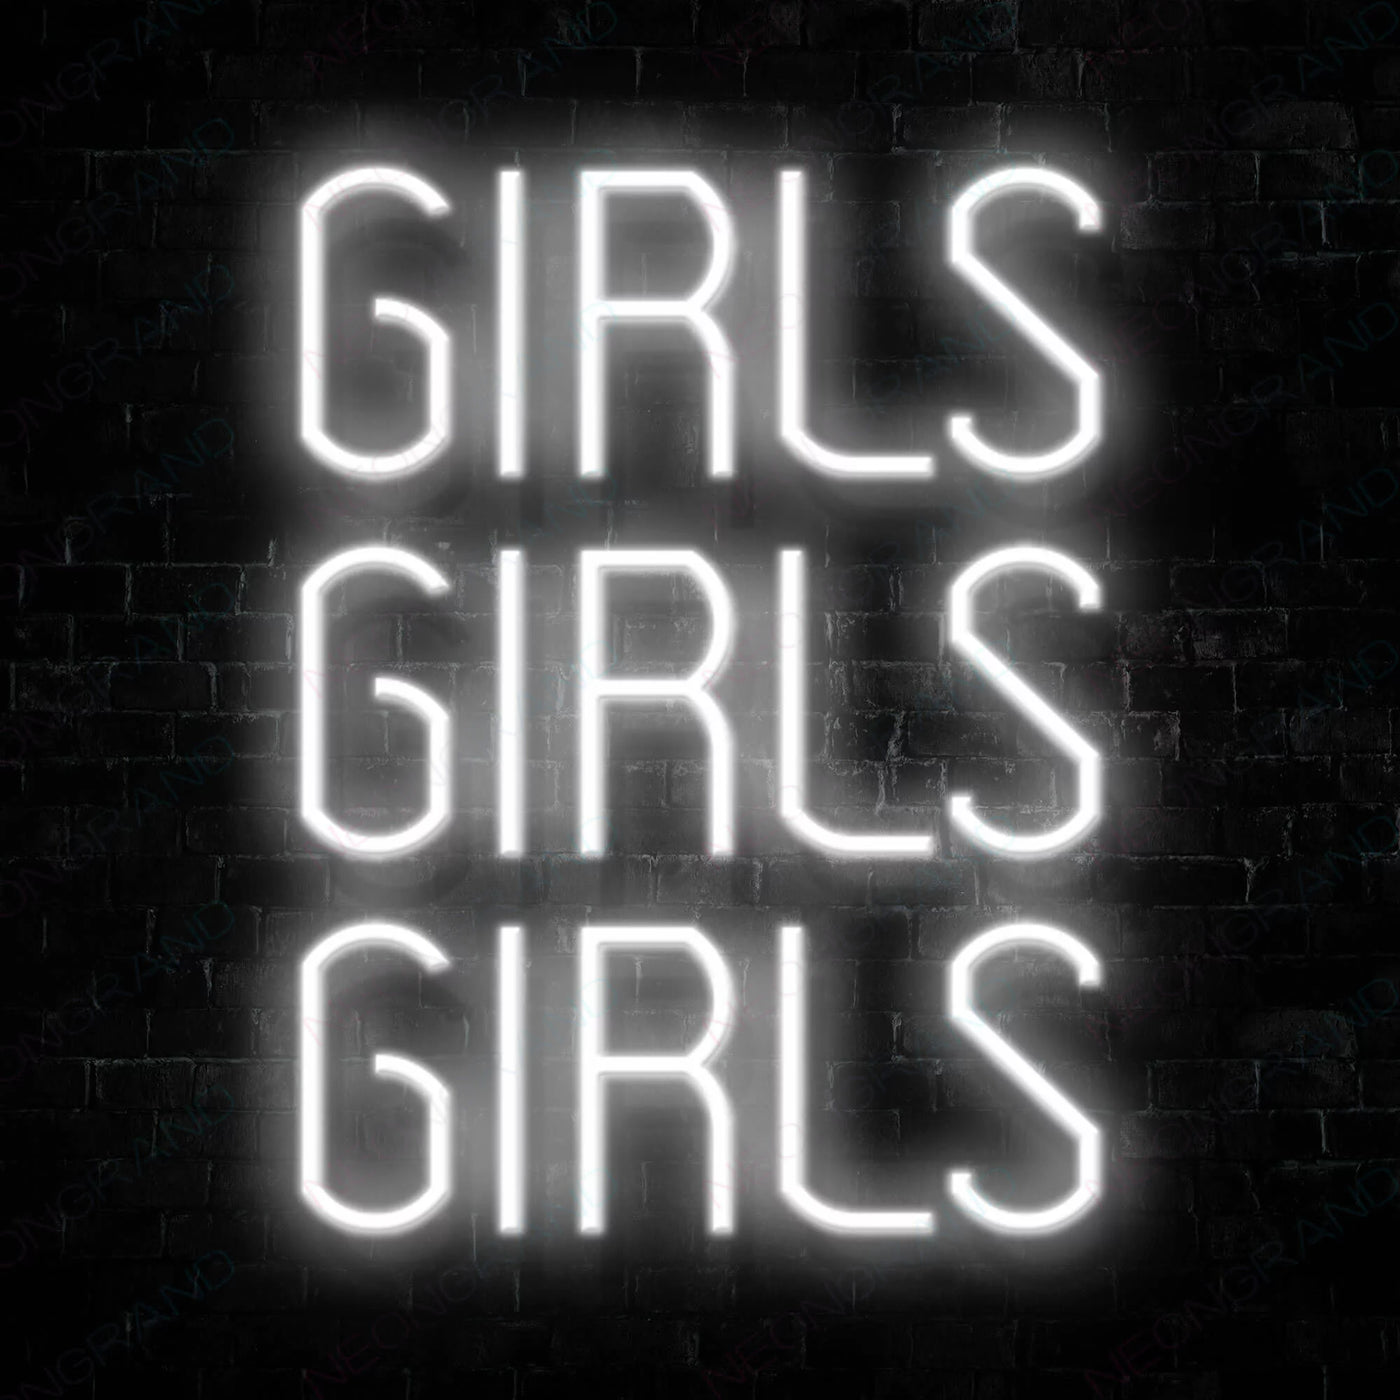 Girls Girls Girls Neon Sign White